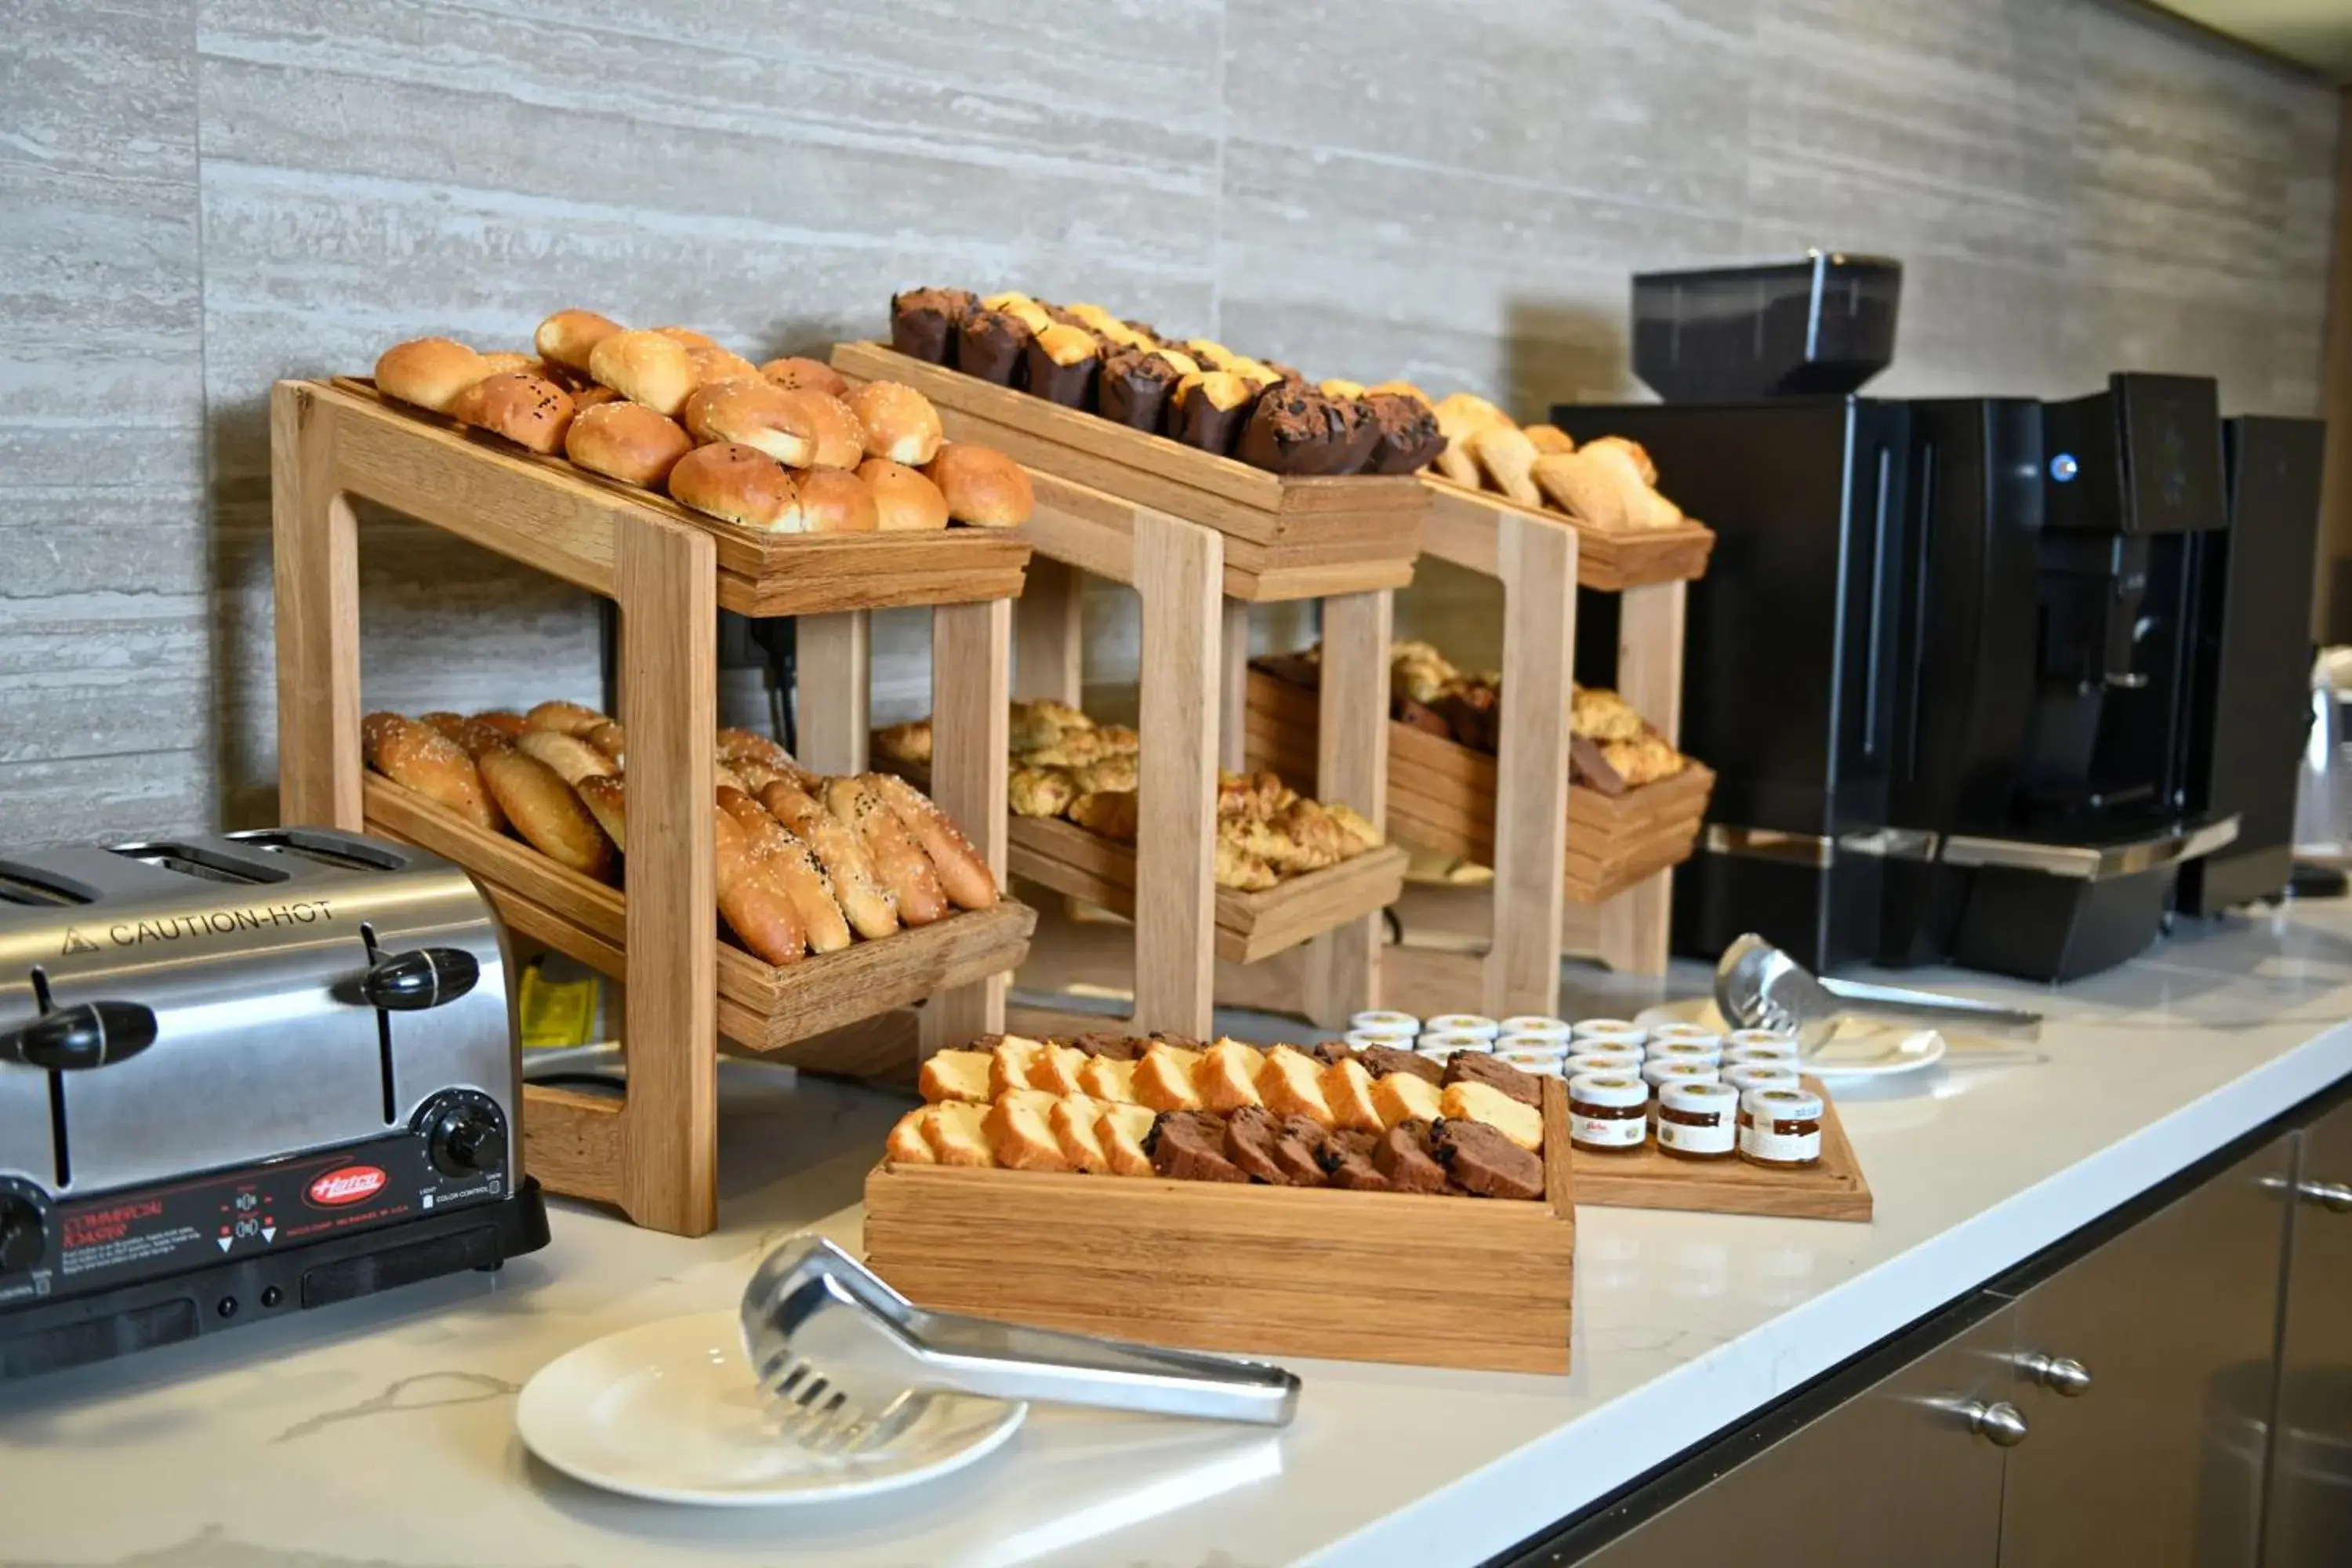 Buffet breakfast, Food in Comfort Hotel Jeddah King Road